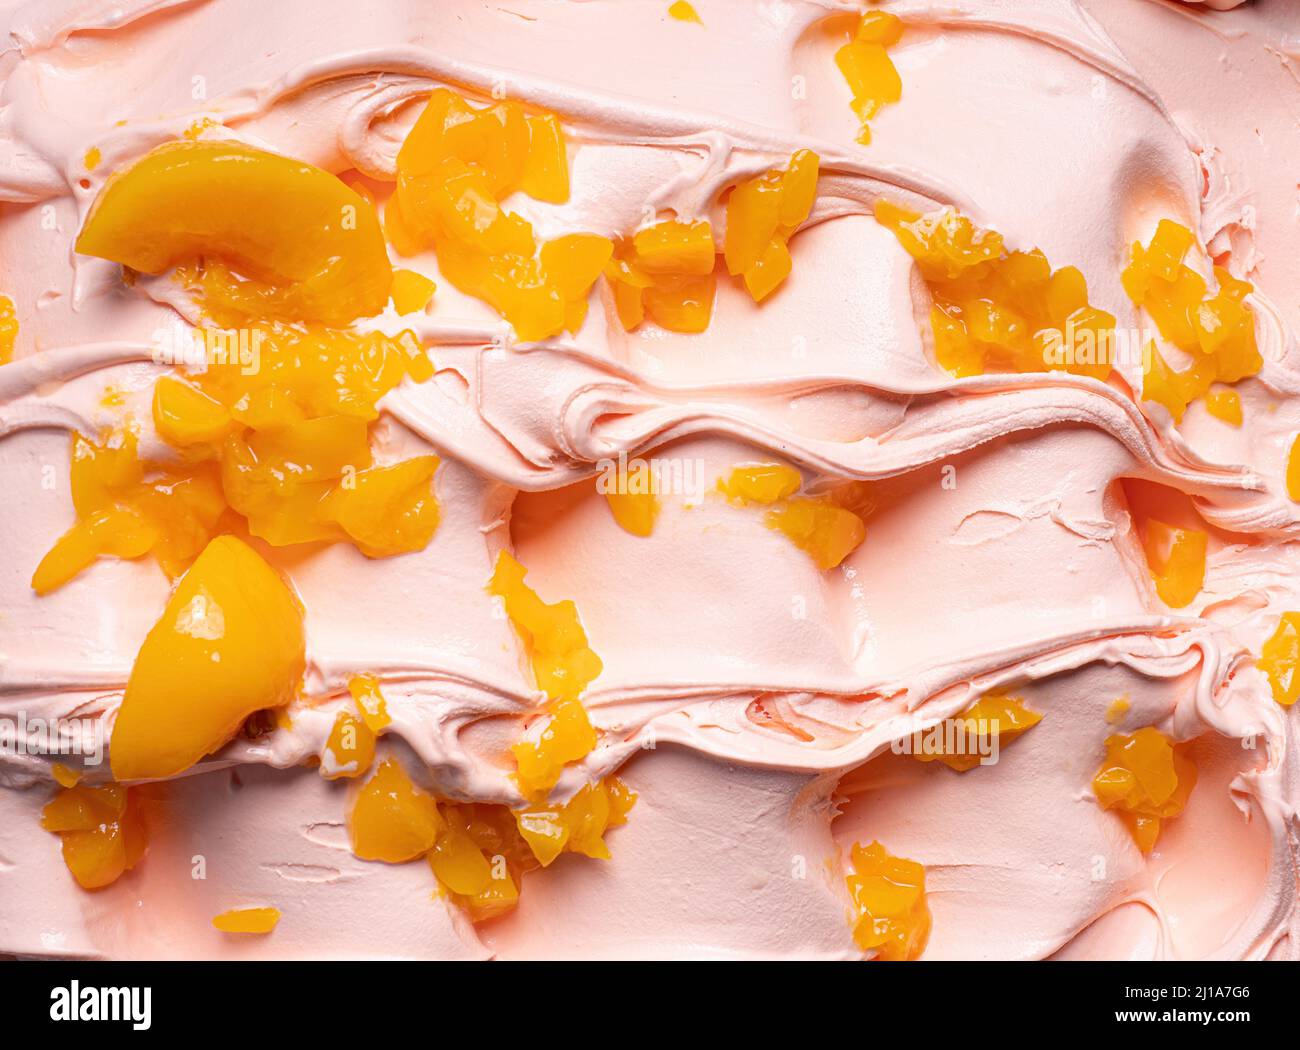 Gelato Frozen Peach Flavour - dettaglio telaio completo. Primo piano di una texture superficiale beige di gelato coperto con pezzi di frutta di colore arancio. Foto Stock